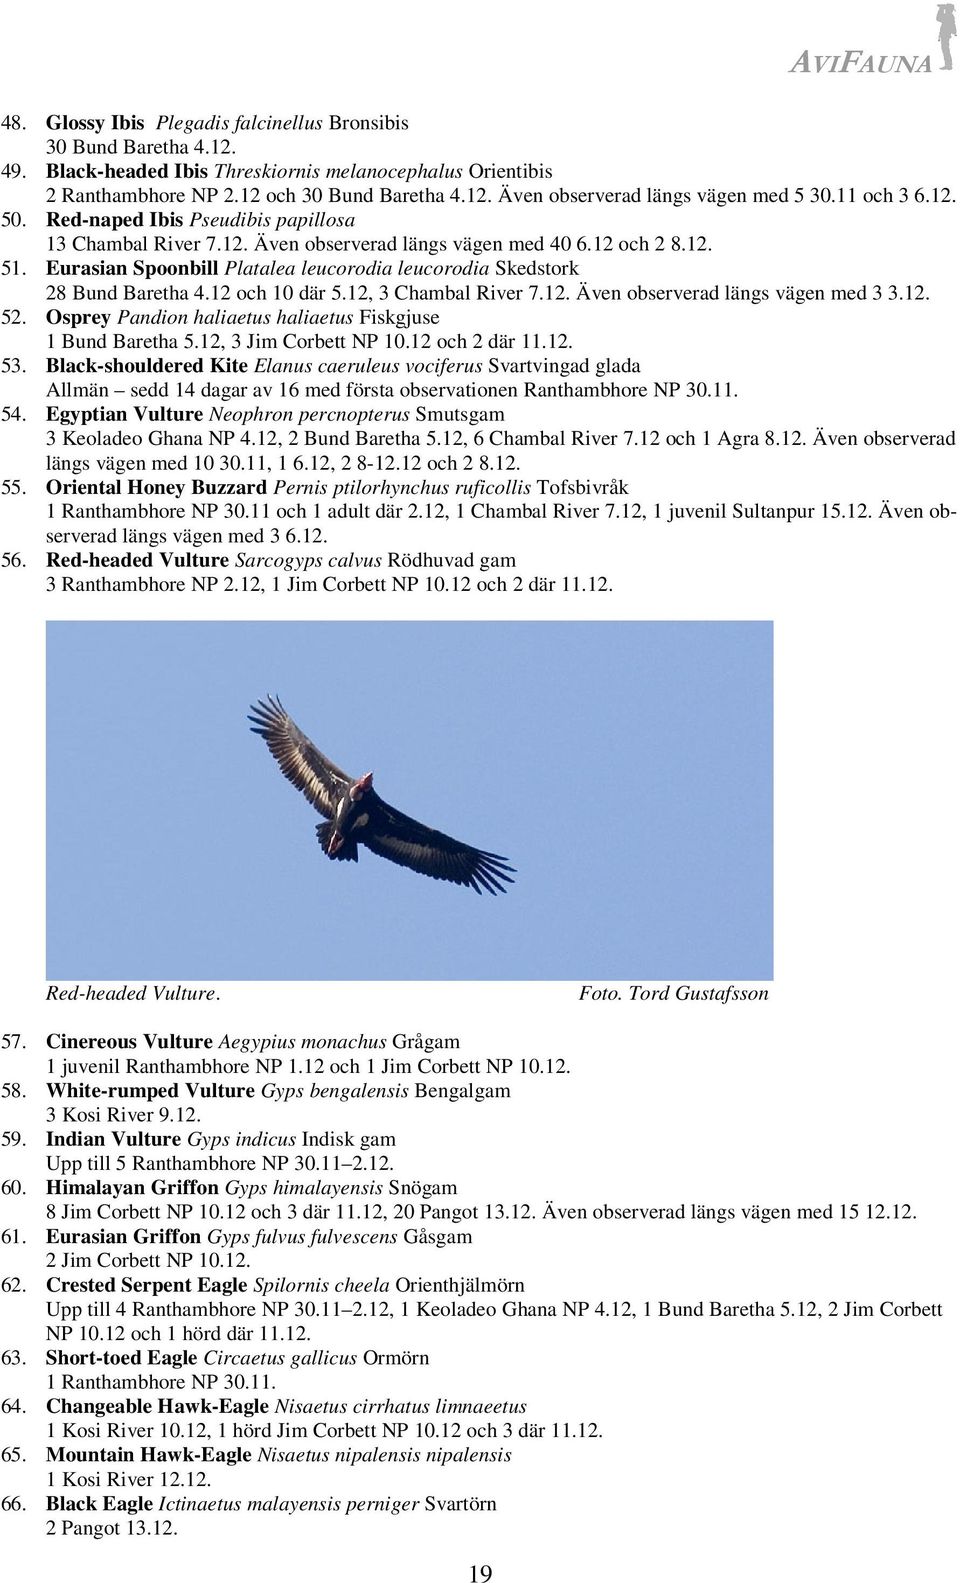 Eurasian Spoonbill Platalea leucorodia leucorodia Skedstork 28 Bund Baretha 4.12 och 10 där 5.12, 3 Chambal River 7.12. Även observerad längs vägen med 3 3.12. 52.